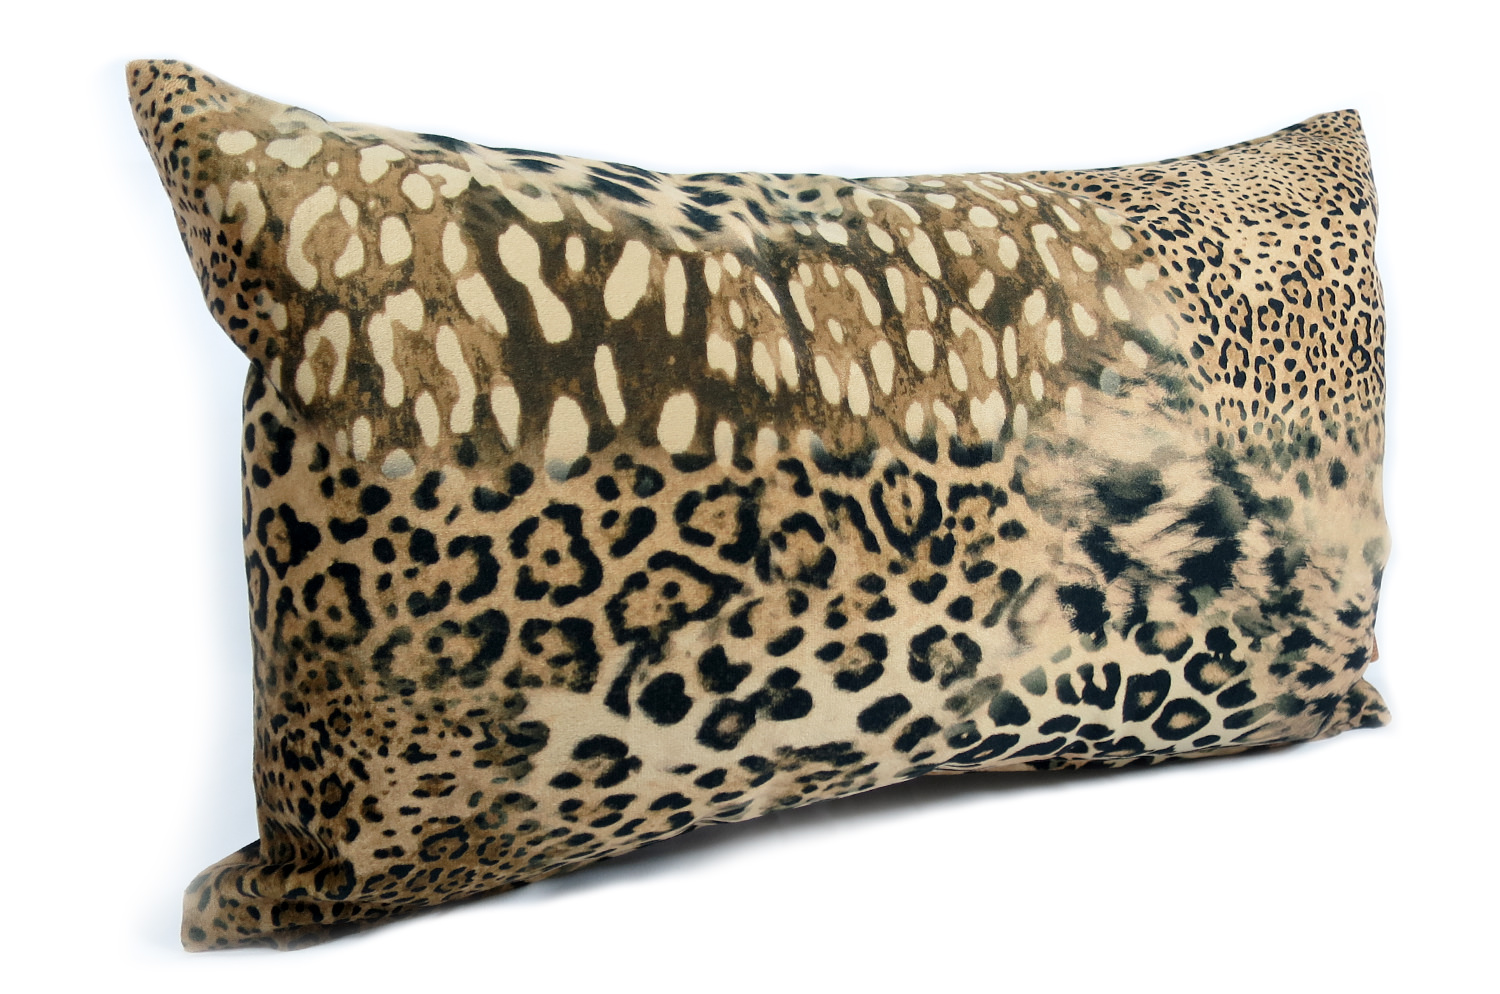 spain-leopard-5030